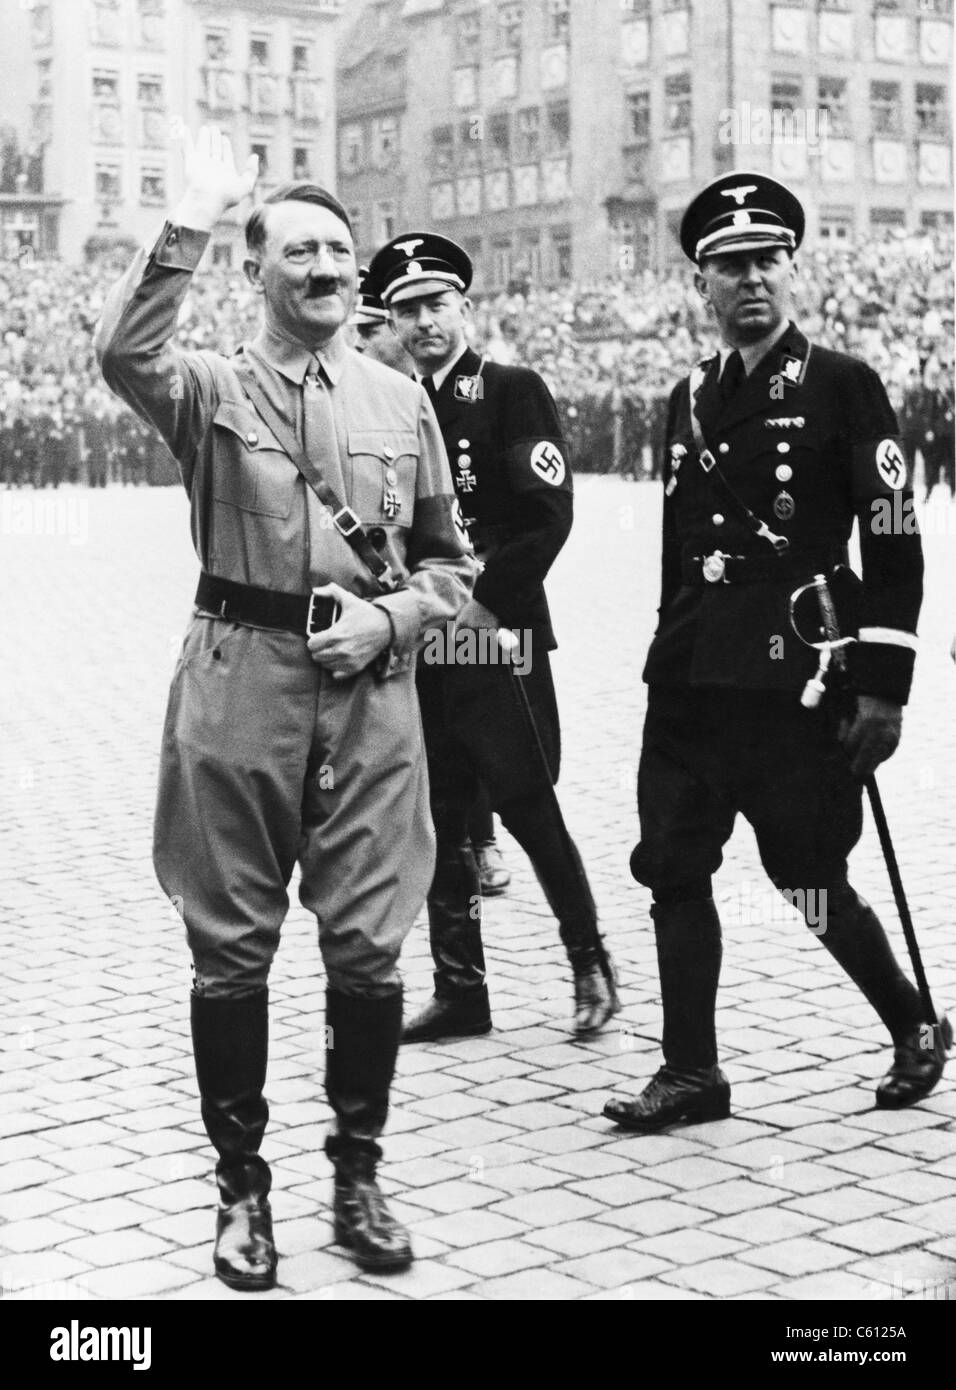 Les mesures a Macaron  décortiquées. par Mr Asselino. -Video Adolf-hitler-saluant-avec-deux-generaux-ss-en-uniforme-derriere-lui-au-parti-nazi-jour-nuremberg-allemagne-1937-c6125a